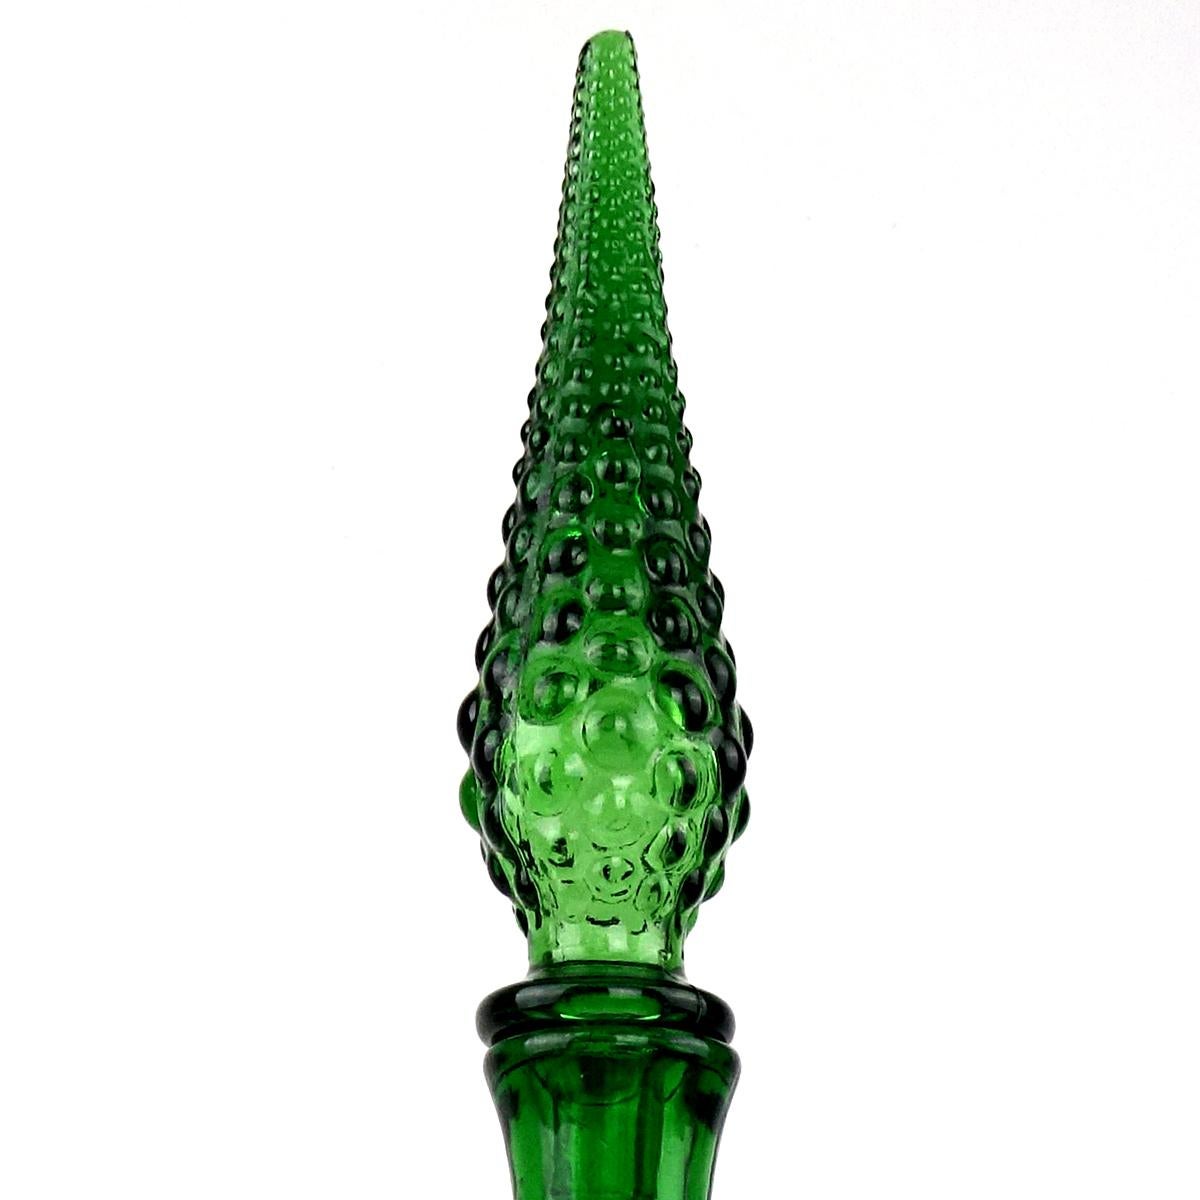 Carafe élégante en verre vert du milieu du siècle dernier avec bouchon.
La conception d'Empoli s'appelle 